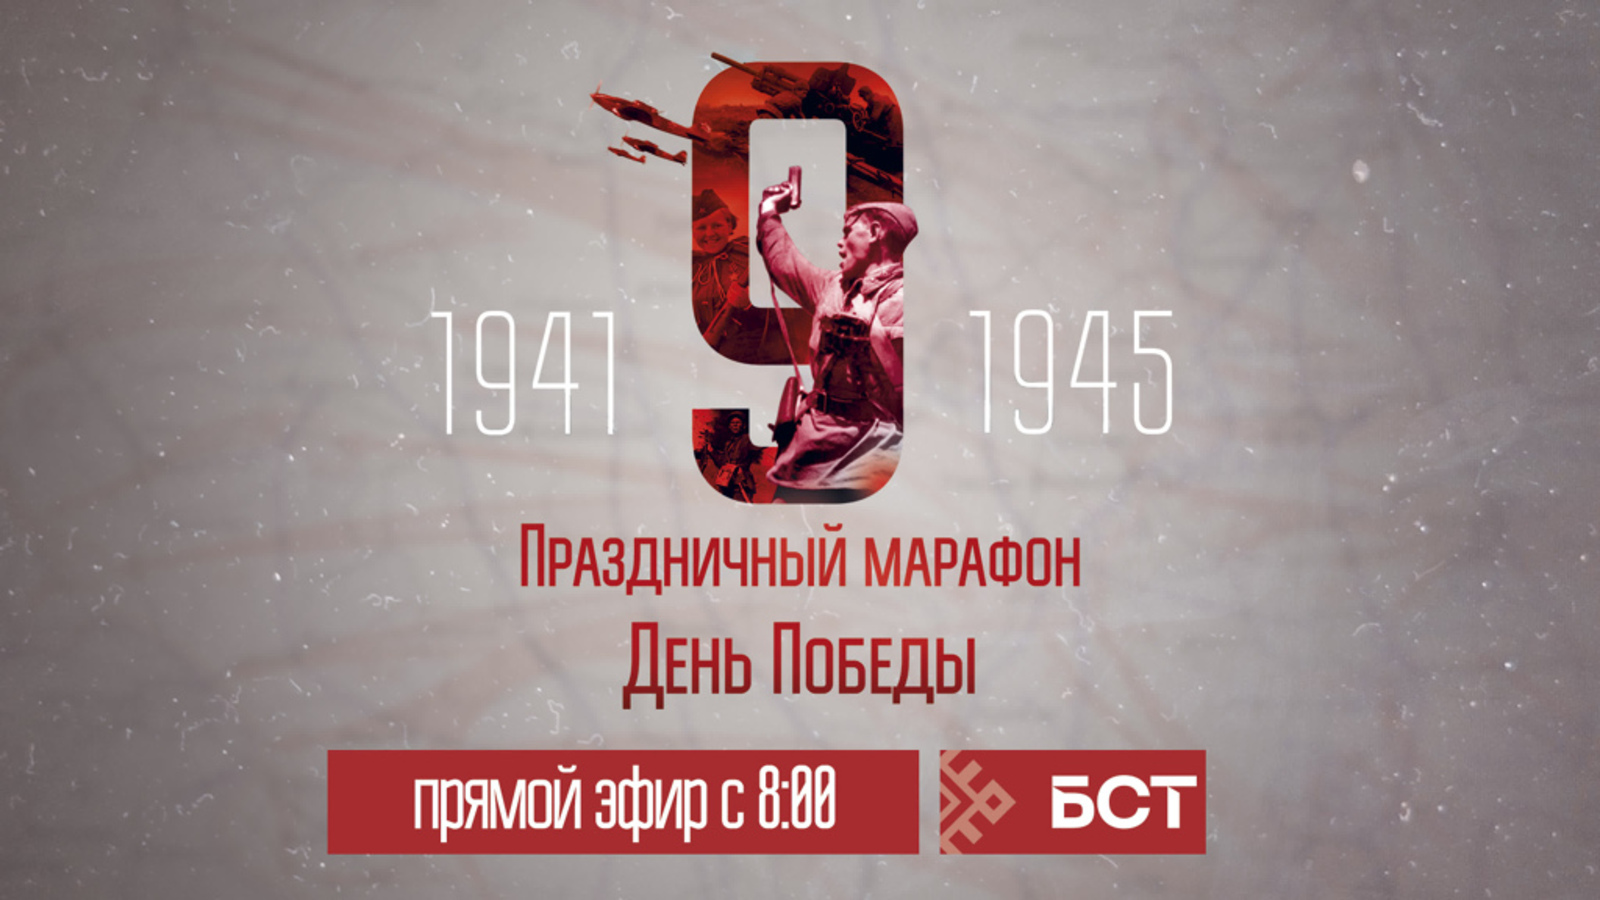 9 мая БСТ покажет праздничный телемарафон «День Победы»